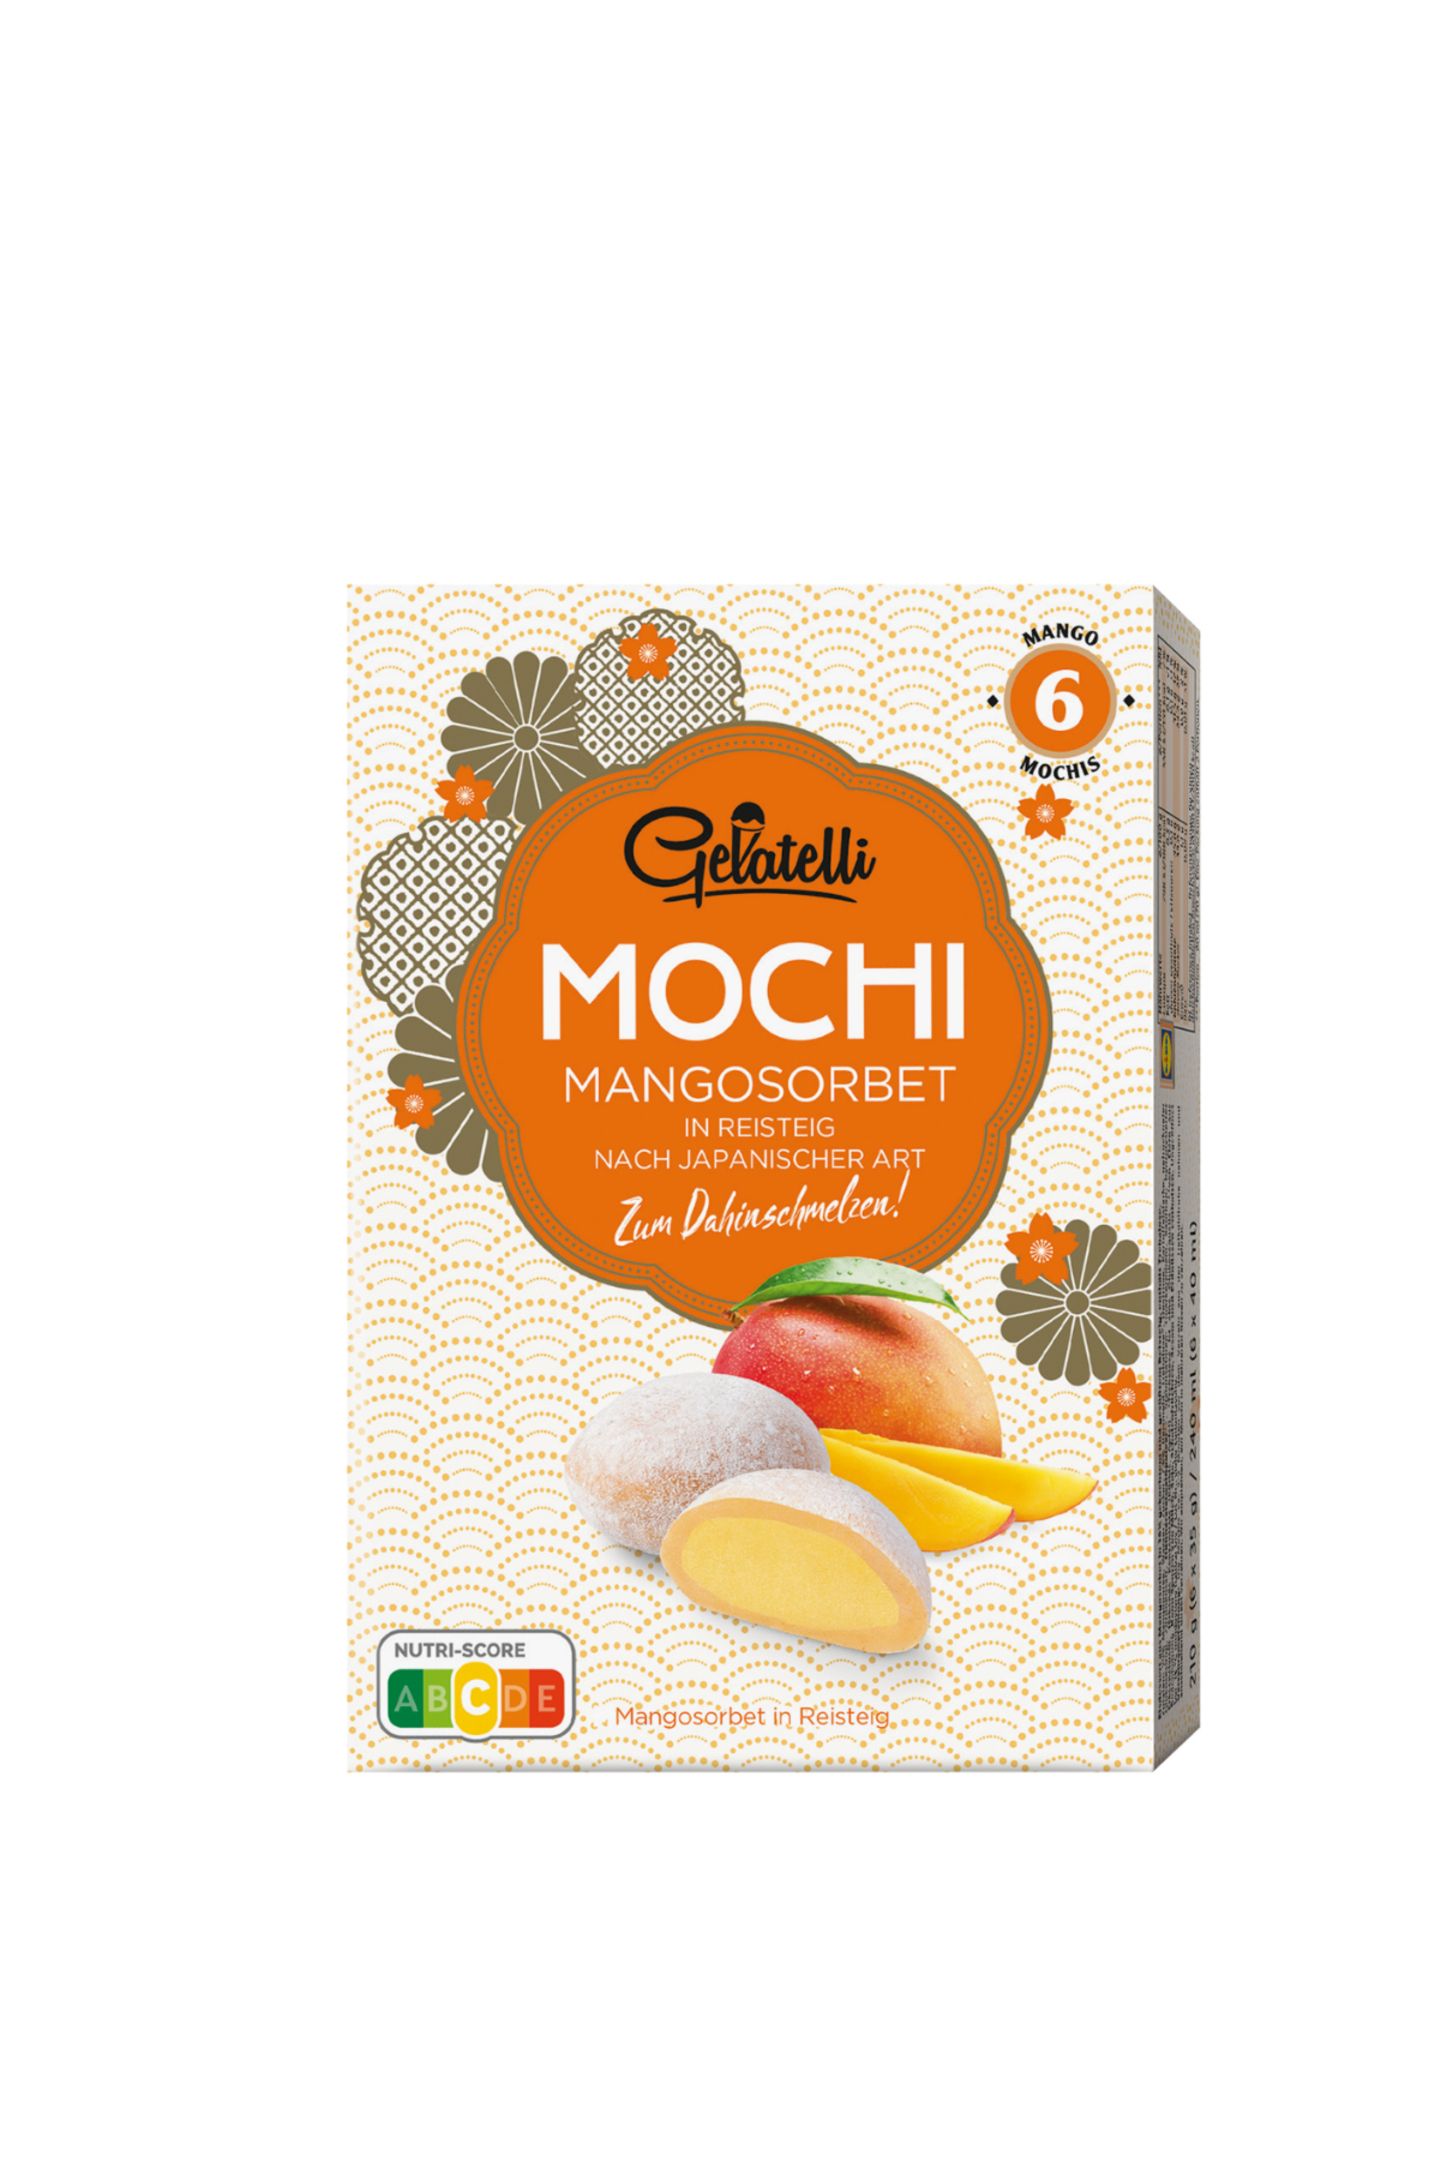 Eis meets Reis Die japanischen Reisbällchen Mochi sind seit einigen Jahren ein echter Trend, auch in Eis-Form. Super erfrischend, lecker und fruchtig: der perfekte Sommersnack. Von Gelatelli bei Lidl, 4,49 Euro.